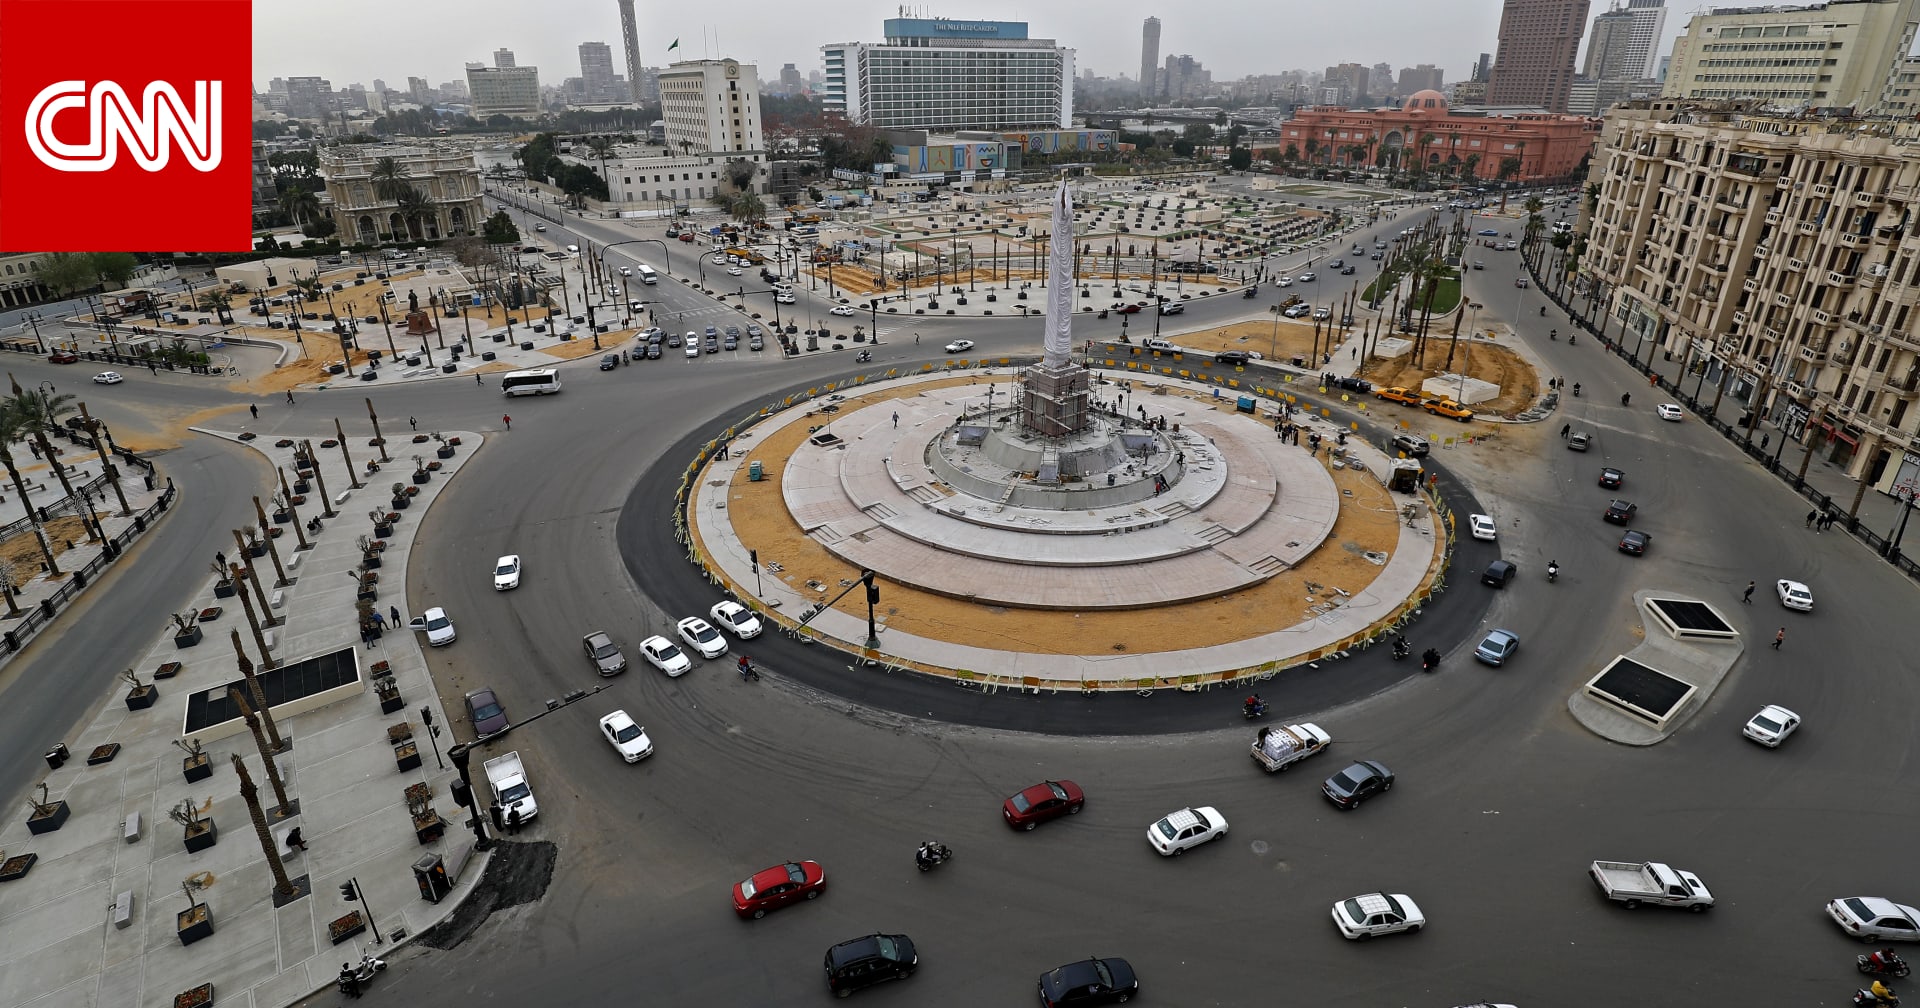 مصر تقترب من ألف إصابة بفيروس كورونا.. والحكومة: معدلات متوسطة مطمئنة - CNN Arabic